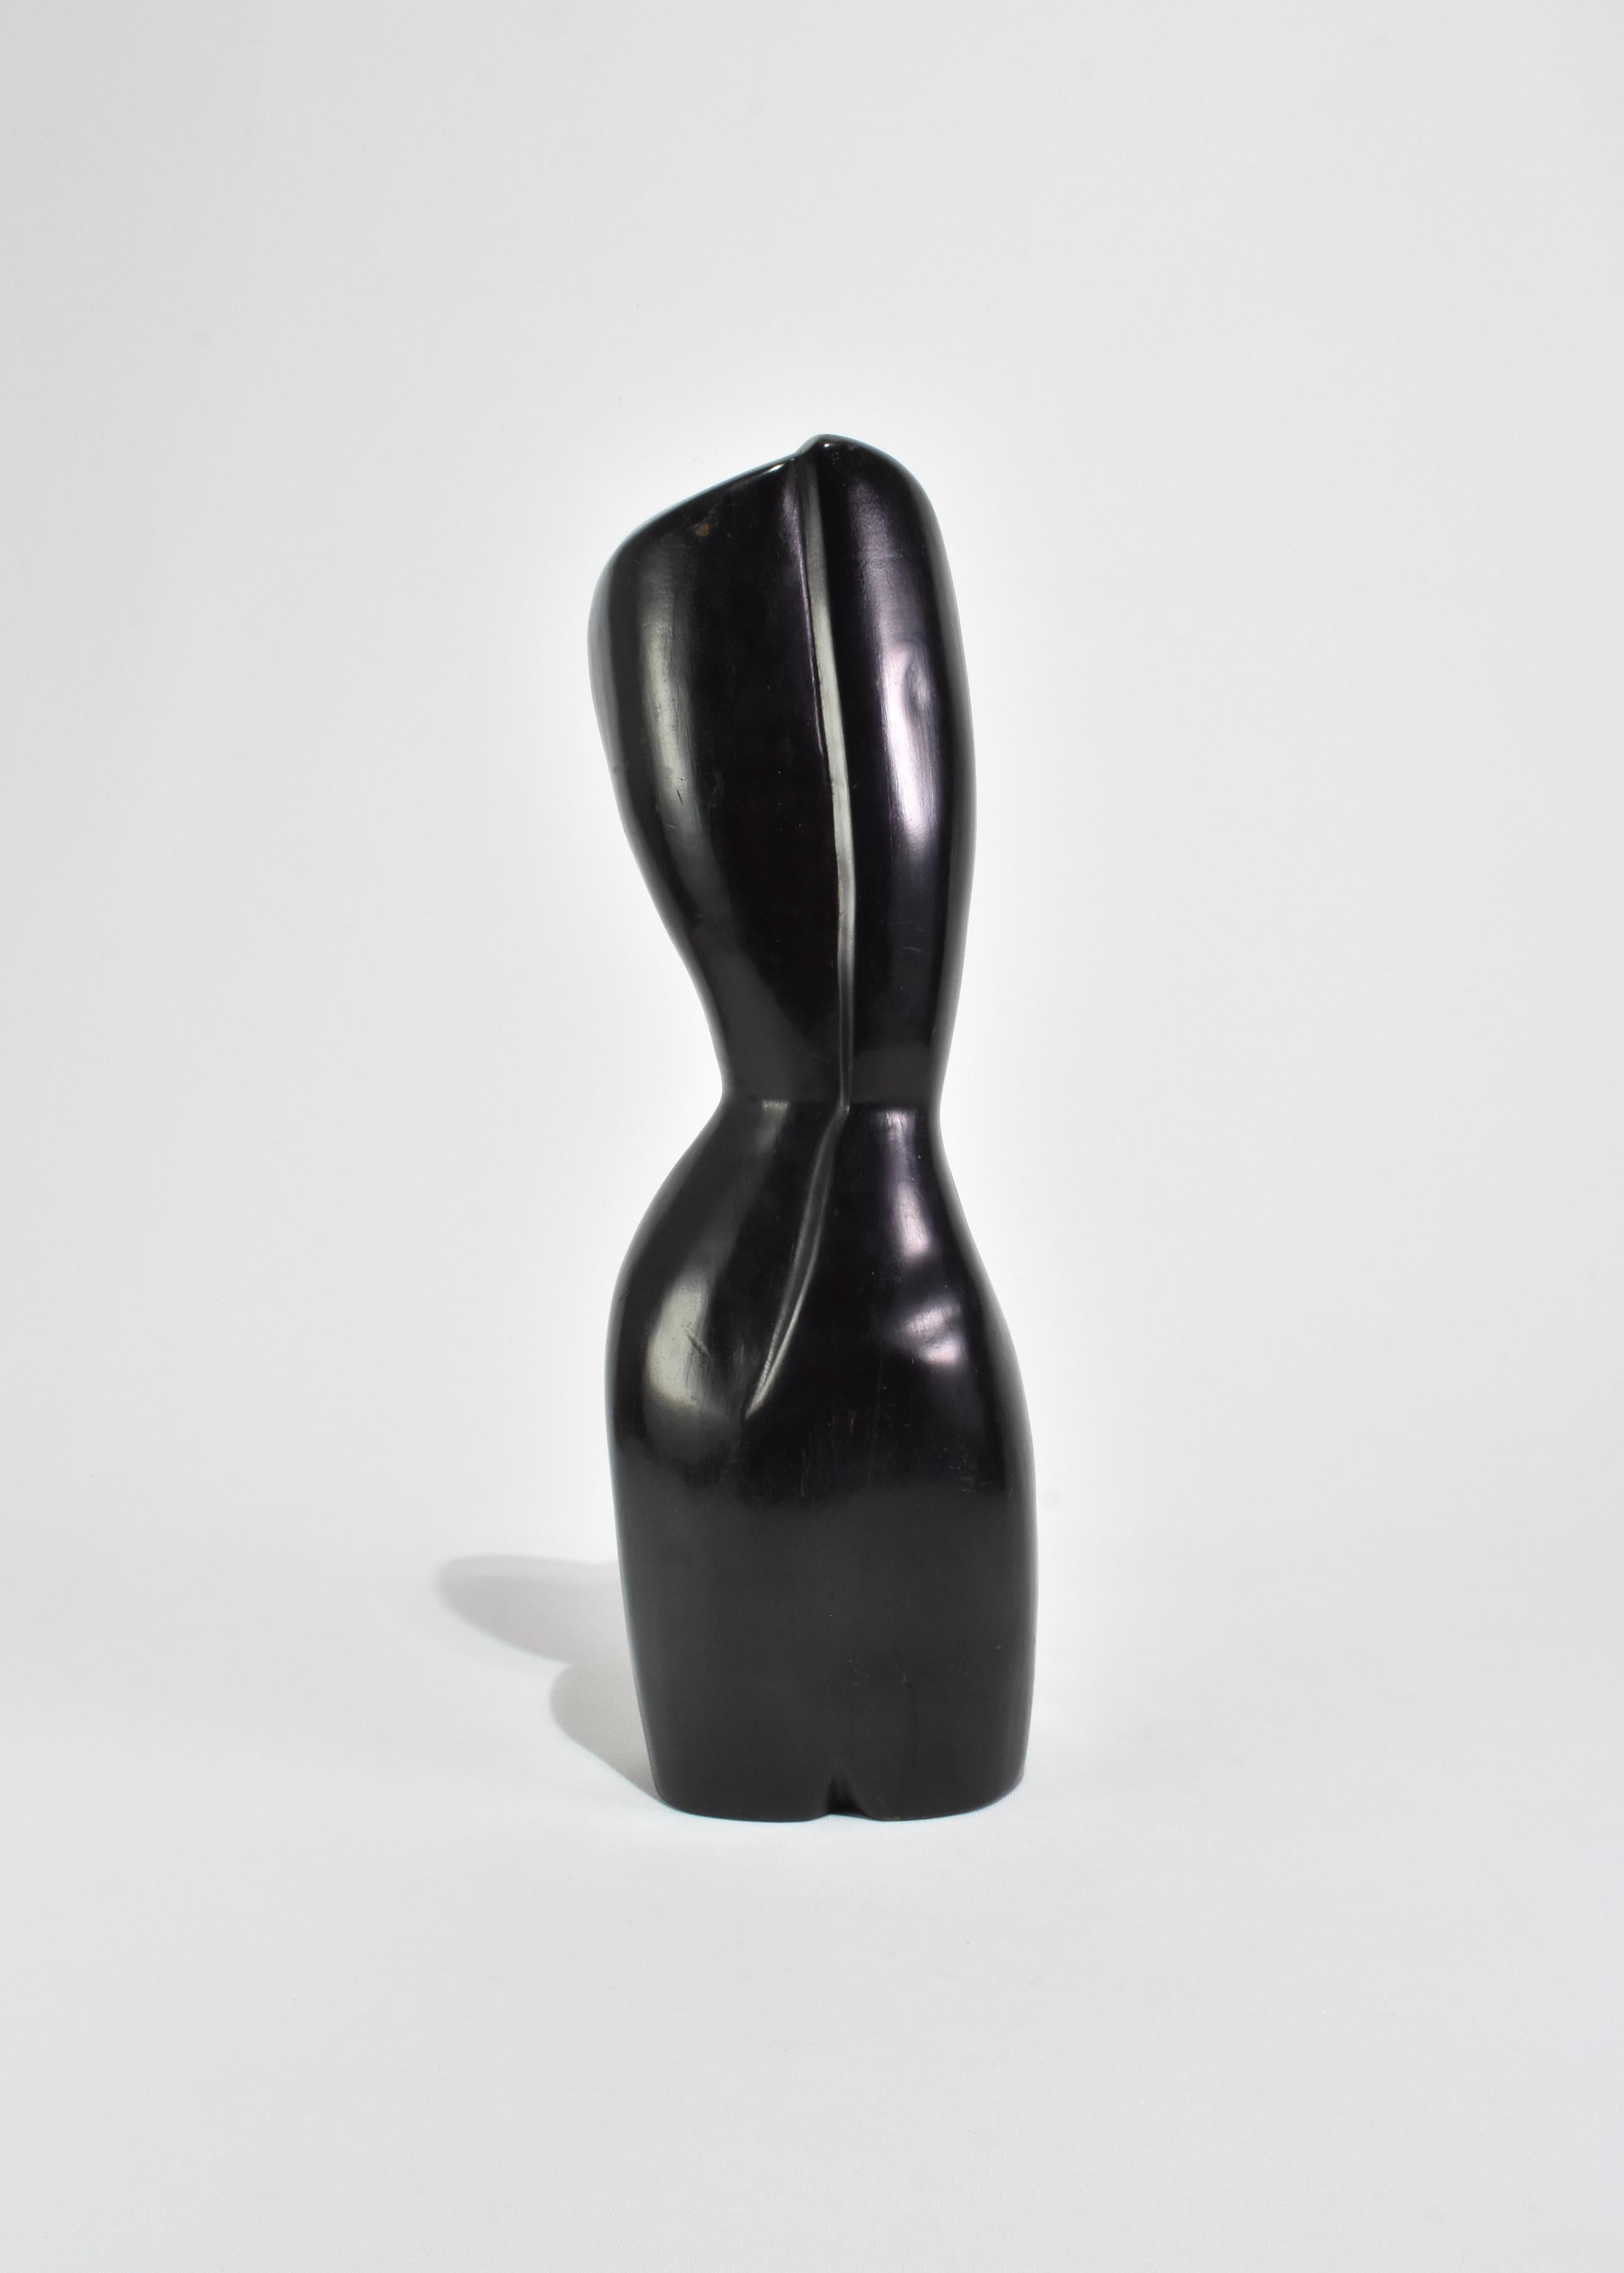 Cubist Torso Sculpture In Good Condition For Sale In Richmond, VA